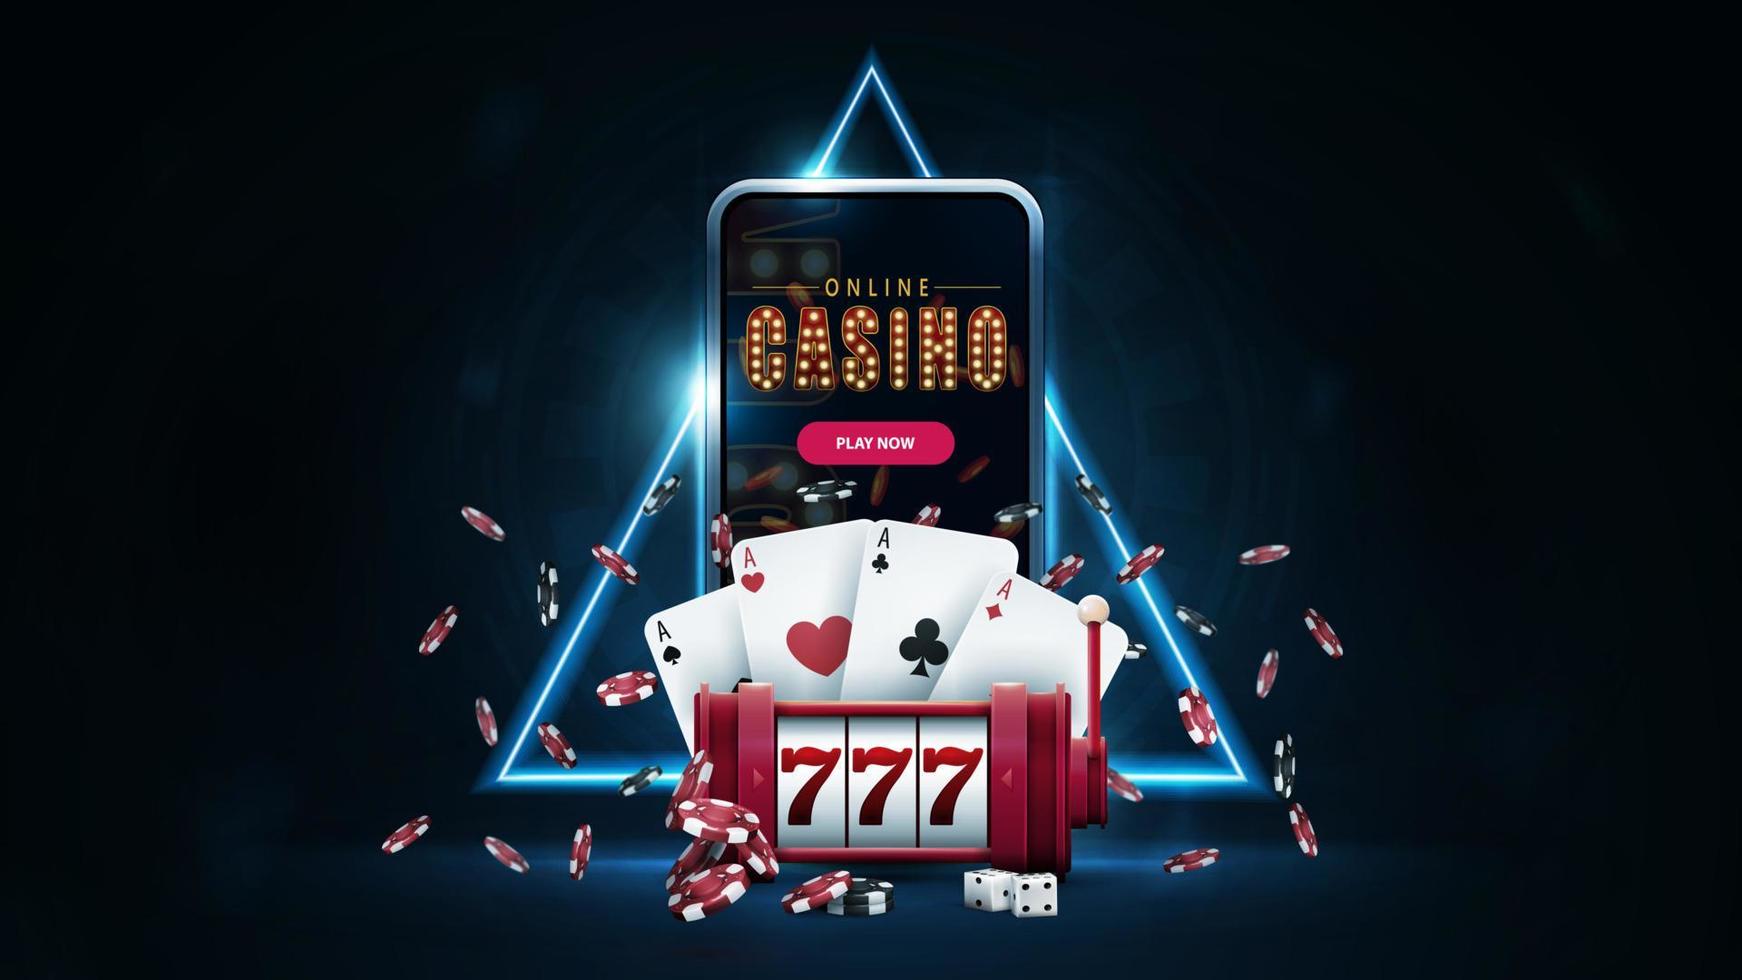 online casino, banner met smartphone, rode gokautomaat, pokerfiches, speelkaarten in donkere scène met blauwe neon driehoekige rand op achtergrond vector